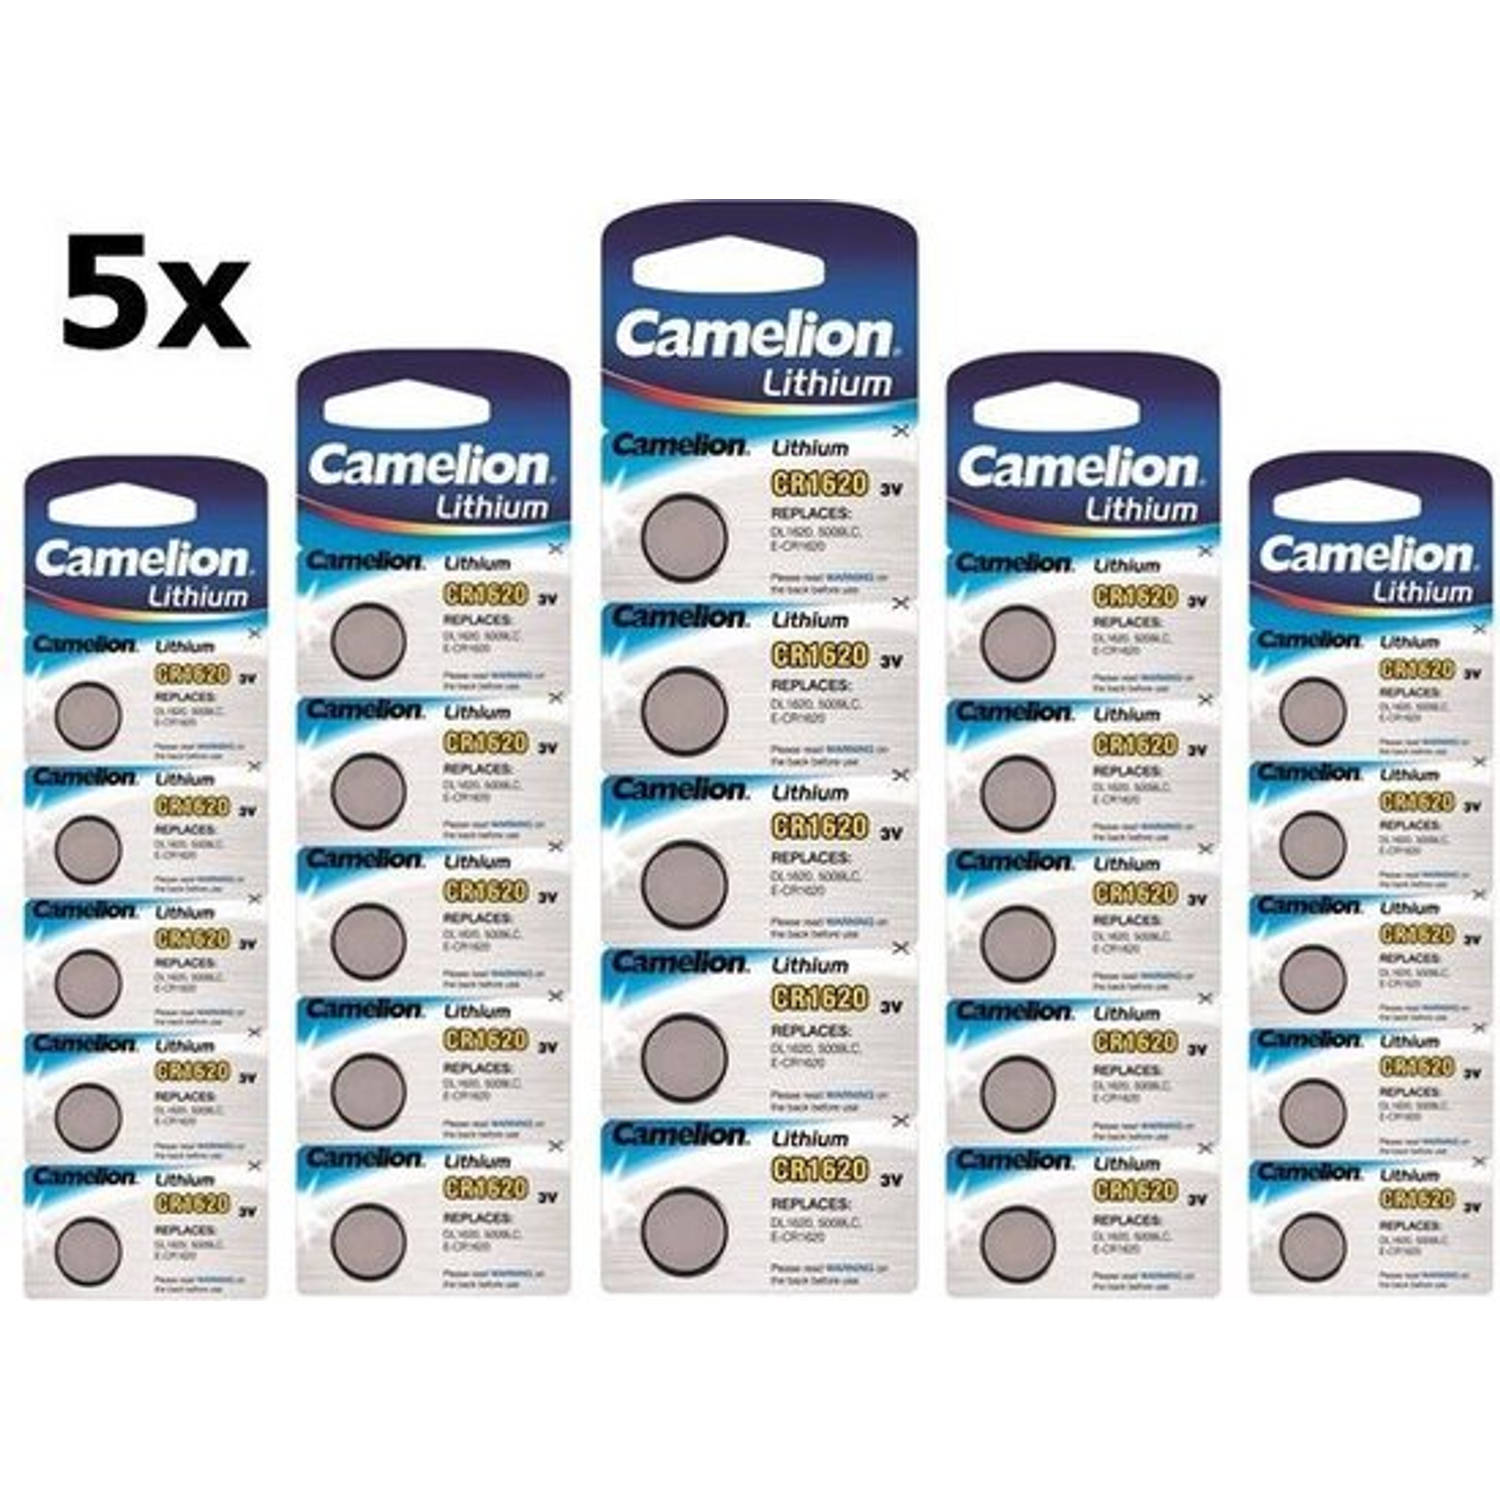 25 Stuks (5 Blister a 5st) Camelion CR1620 3v lithium knoopcelbatterij